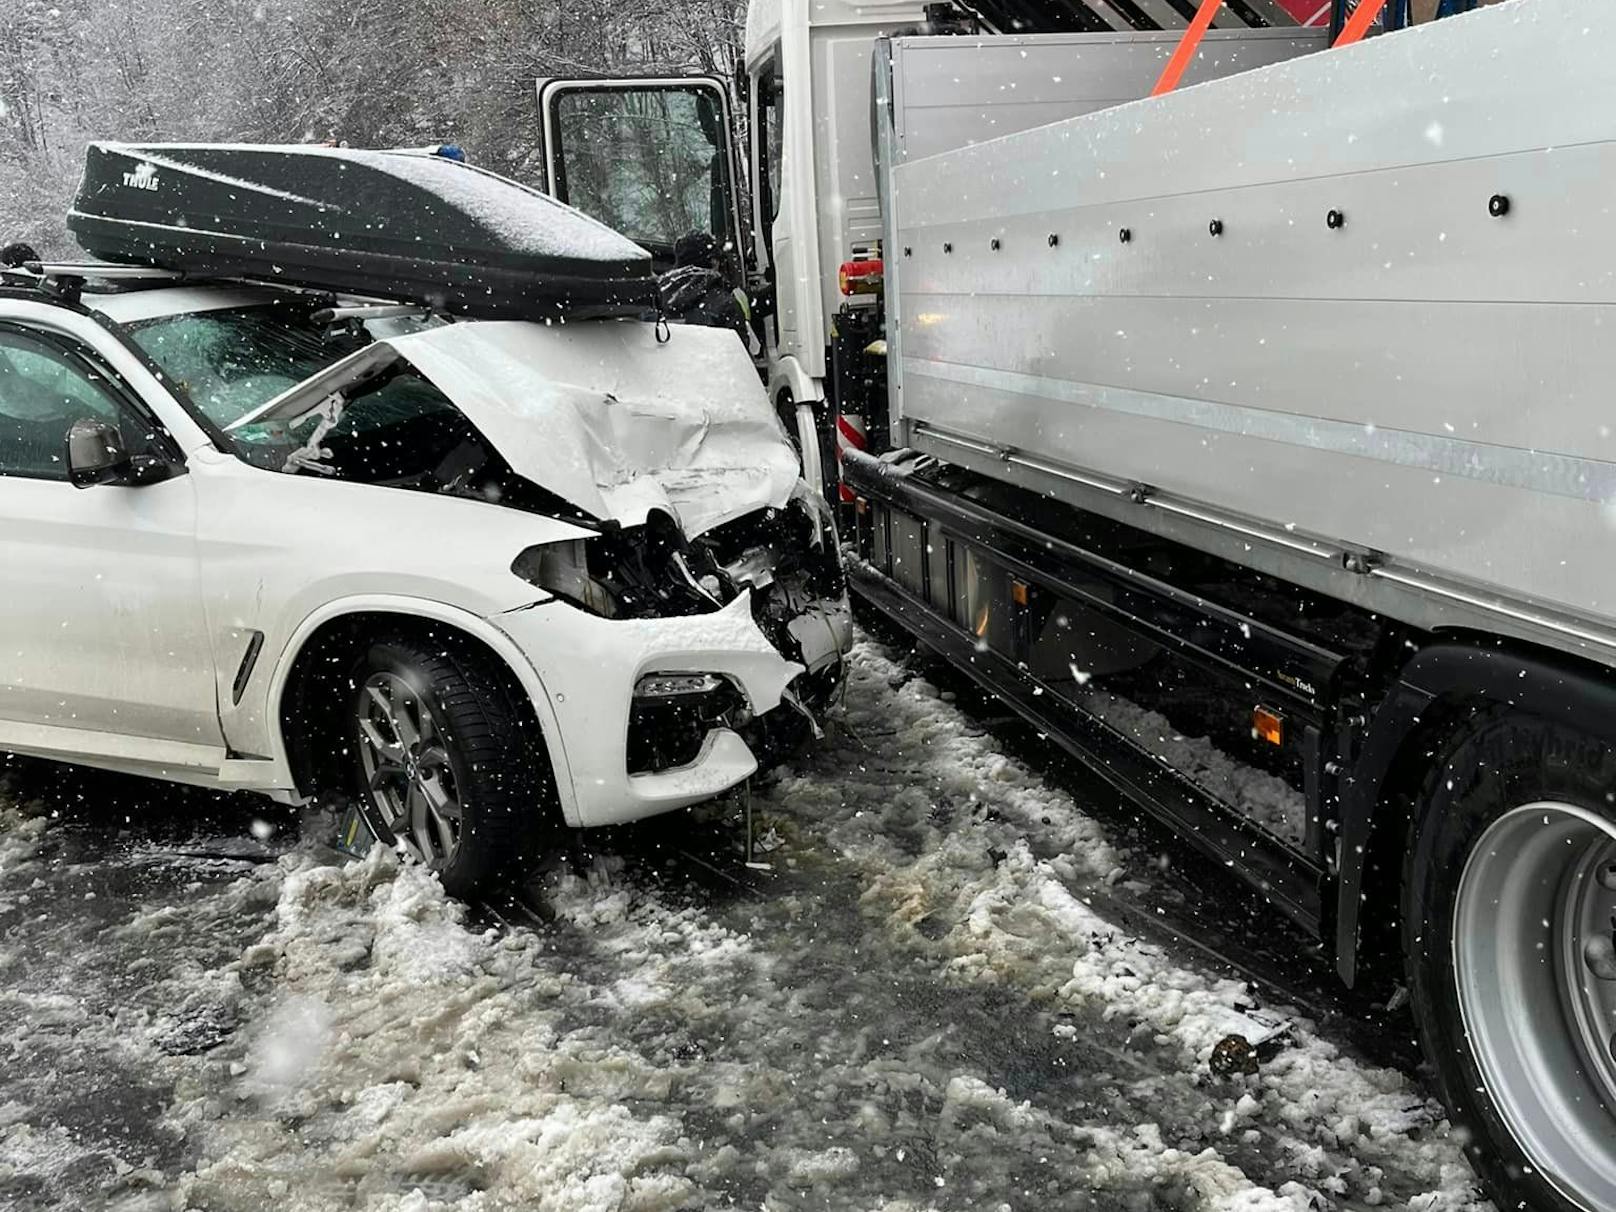 Verkehrsunfall auf der Hochkönigstrasse in Fieberbrunn (T) aufgrund winterlicher Fahrbahnverhältnisse. (2. Februar 2023)